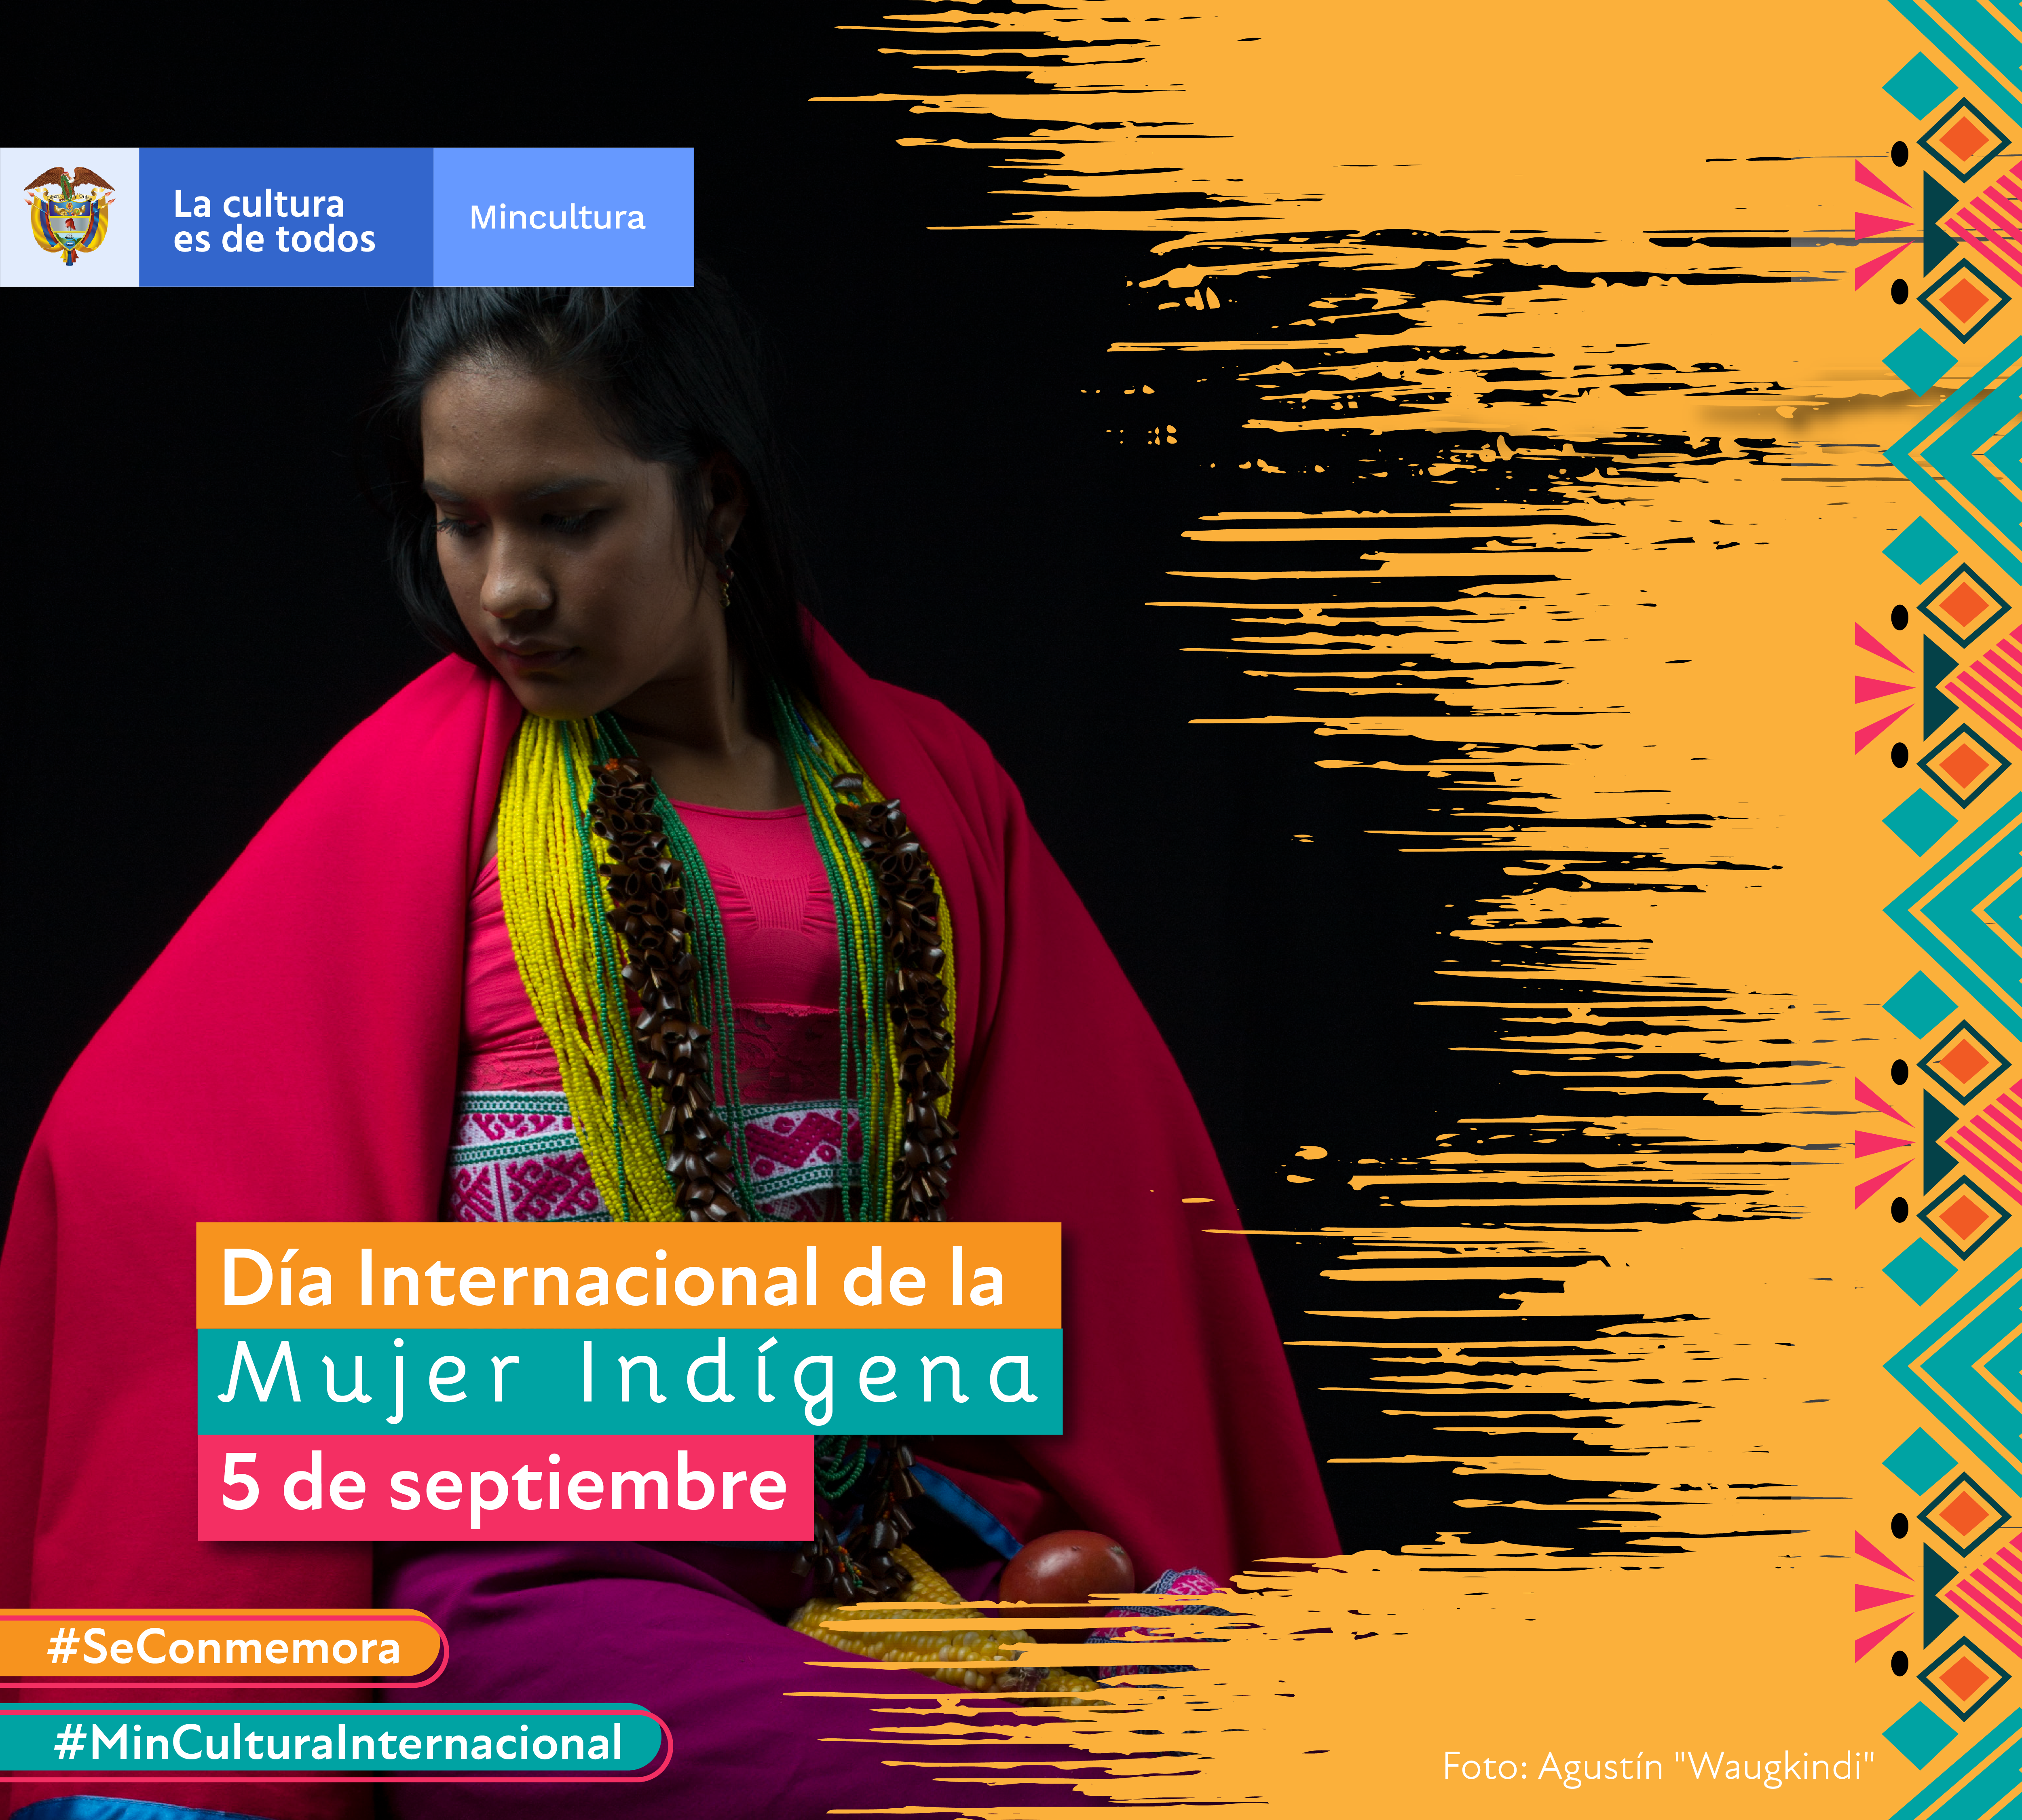 El Ministerio de Cultura conmemora el Día Internacional de la Mujer Indígena 